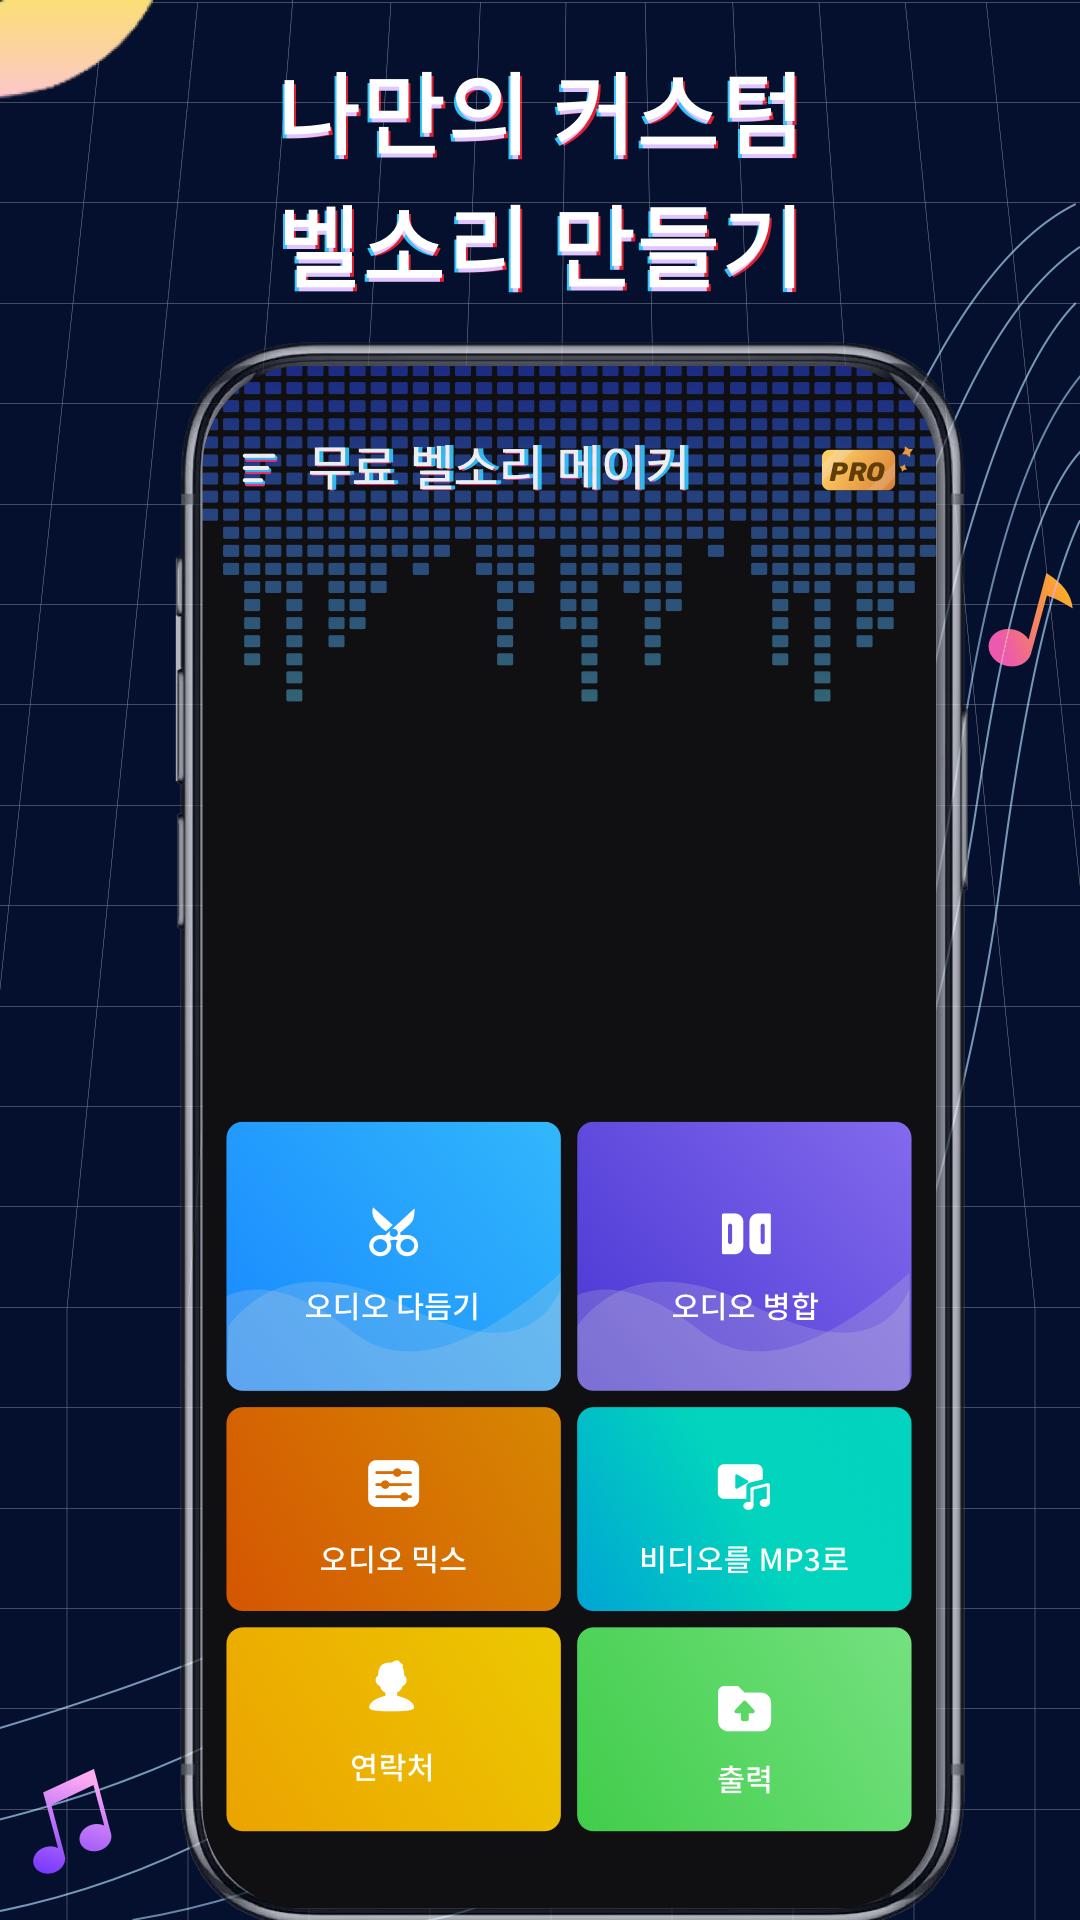 Android용 벨소리 메이커: 뮤직 커터, 커스텀 벨소리 Apk 다운로드